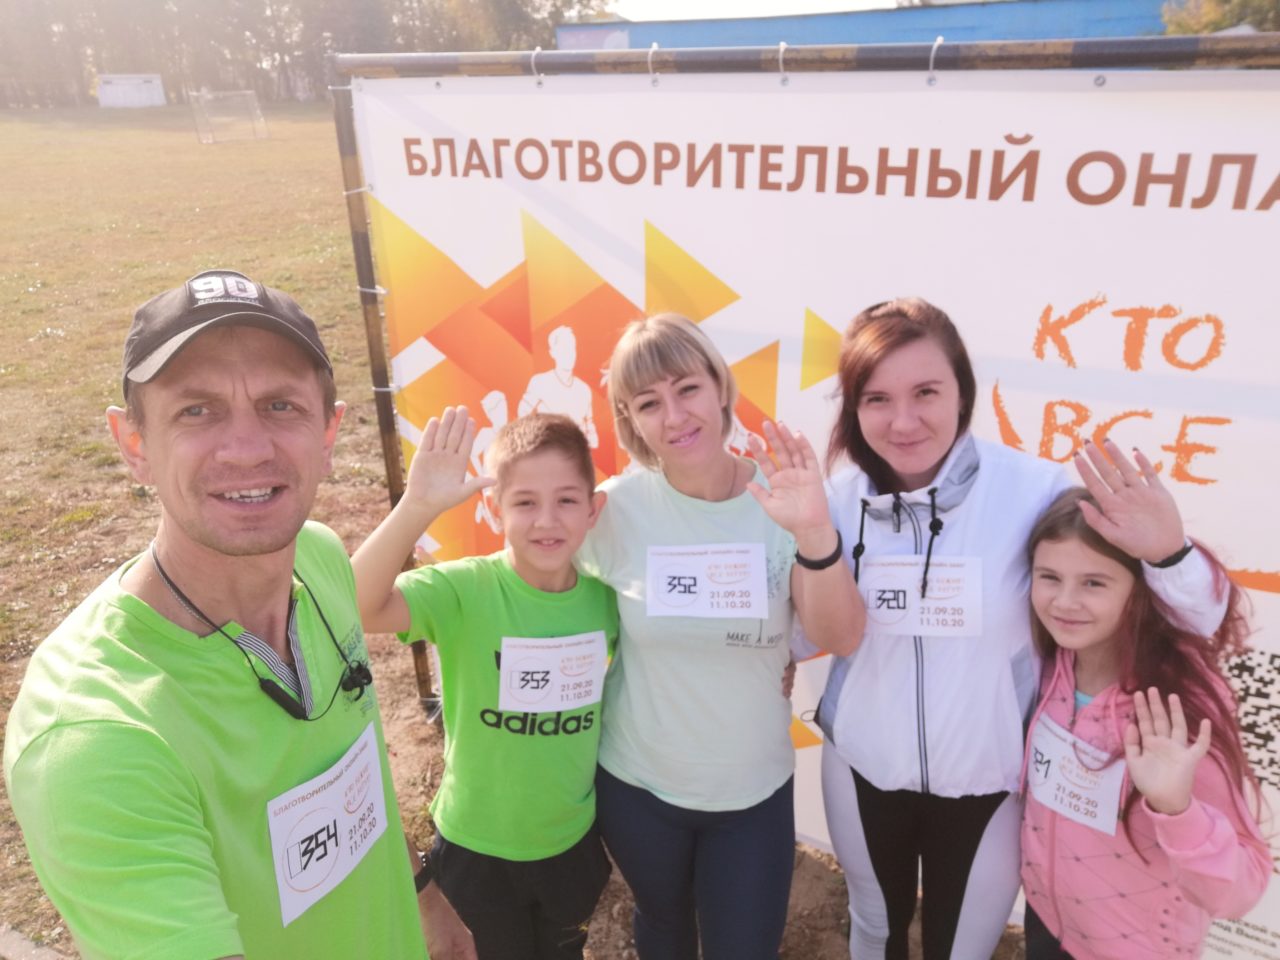 Участники благотворительного забега «Кто бежит? Все бегут!» собрали более 100 тысяч рублей для девятилетней Маши Мудрик